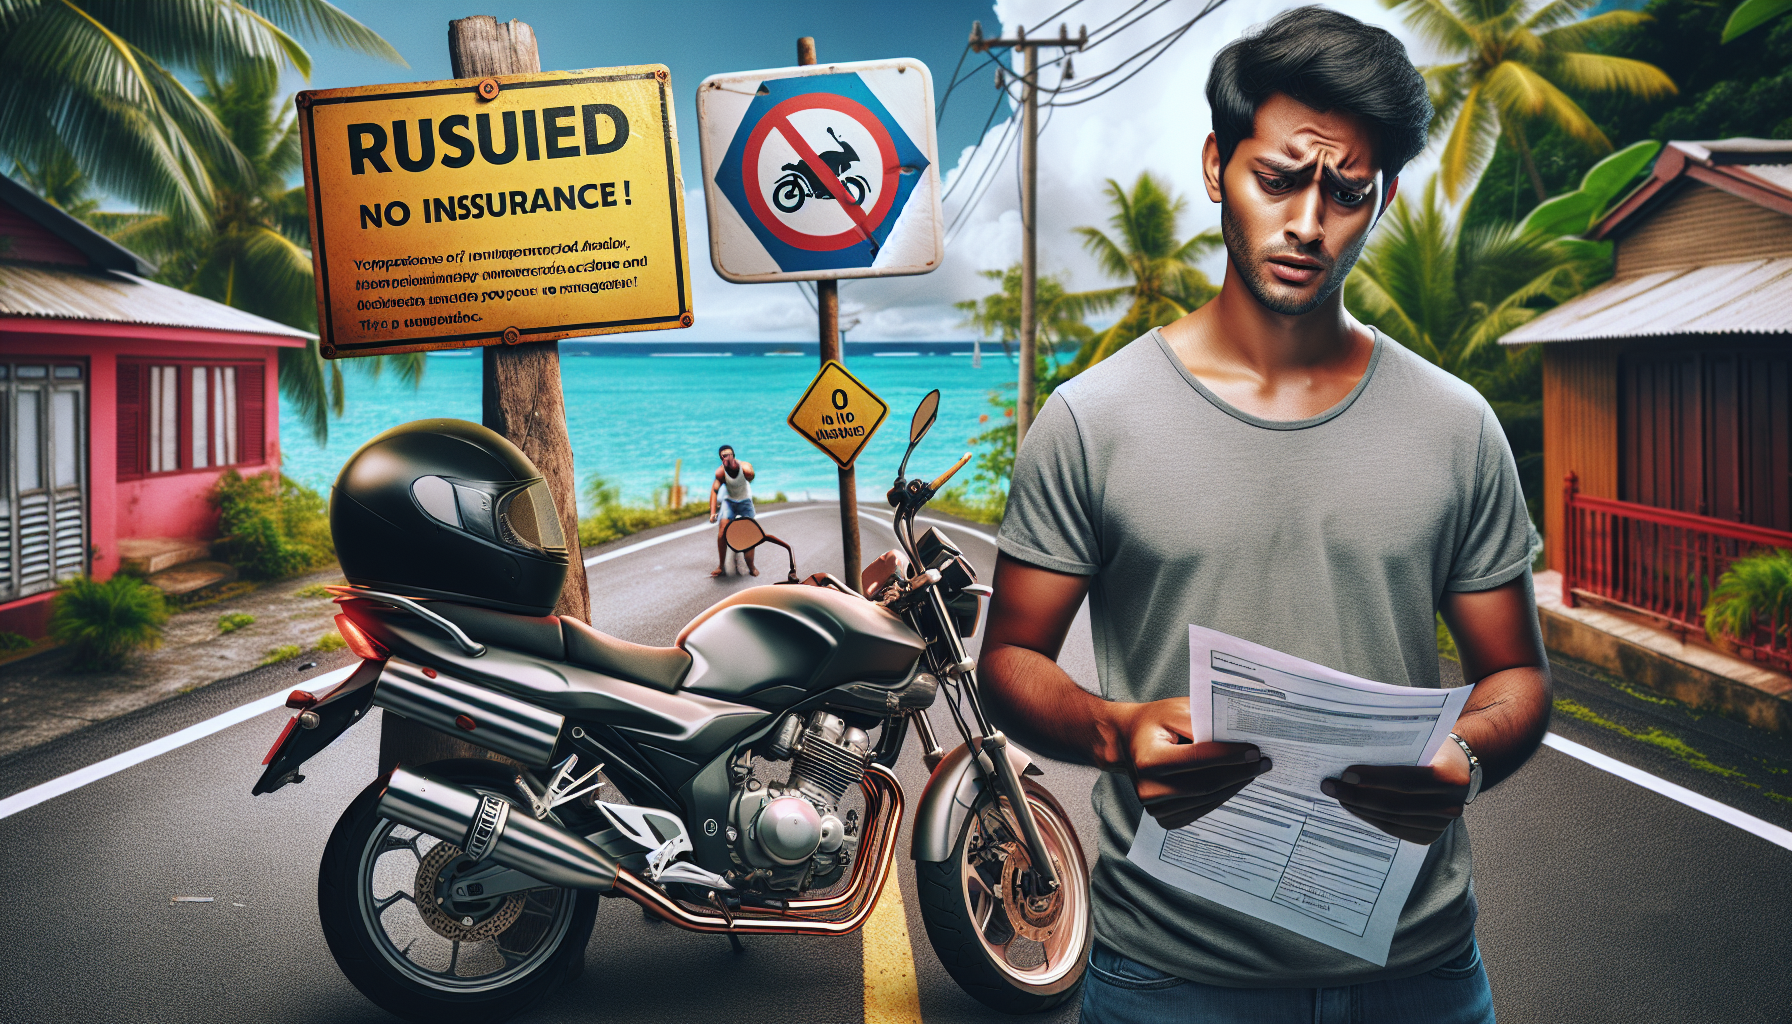 découvrez la procédure à suivre en cas d'accident sans assurance pour votre moto à la réunion. protégez-vous et votre véhicule avec notre guide sur l'assurance moto.